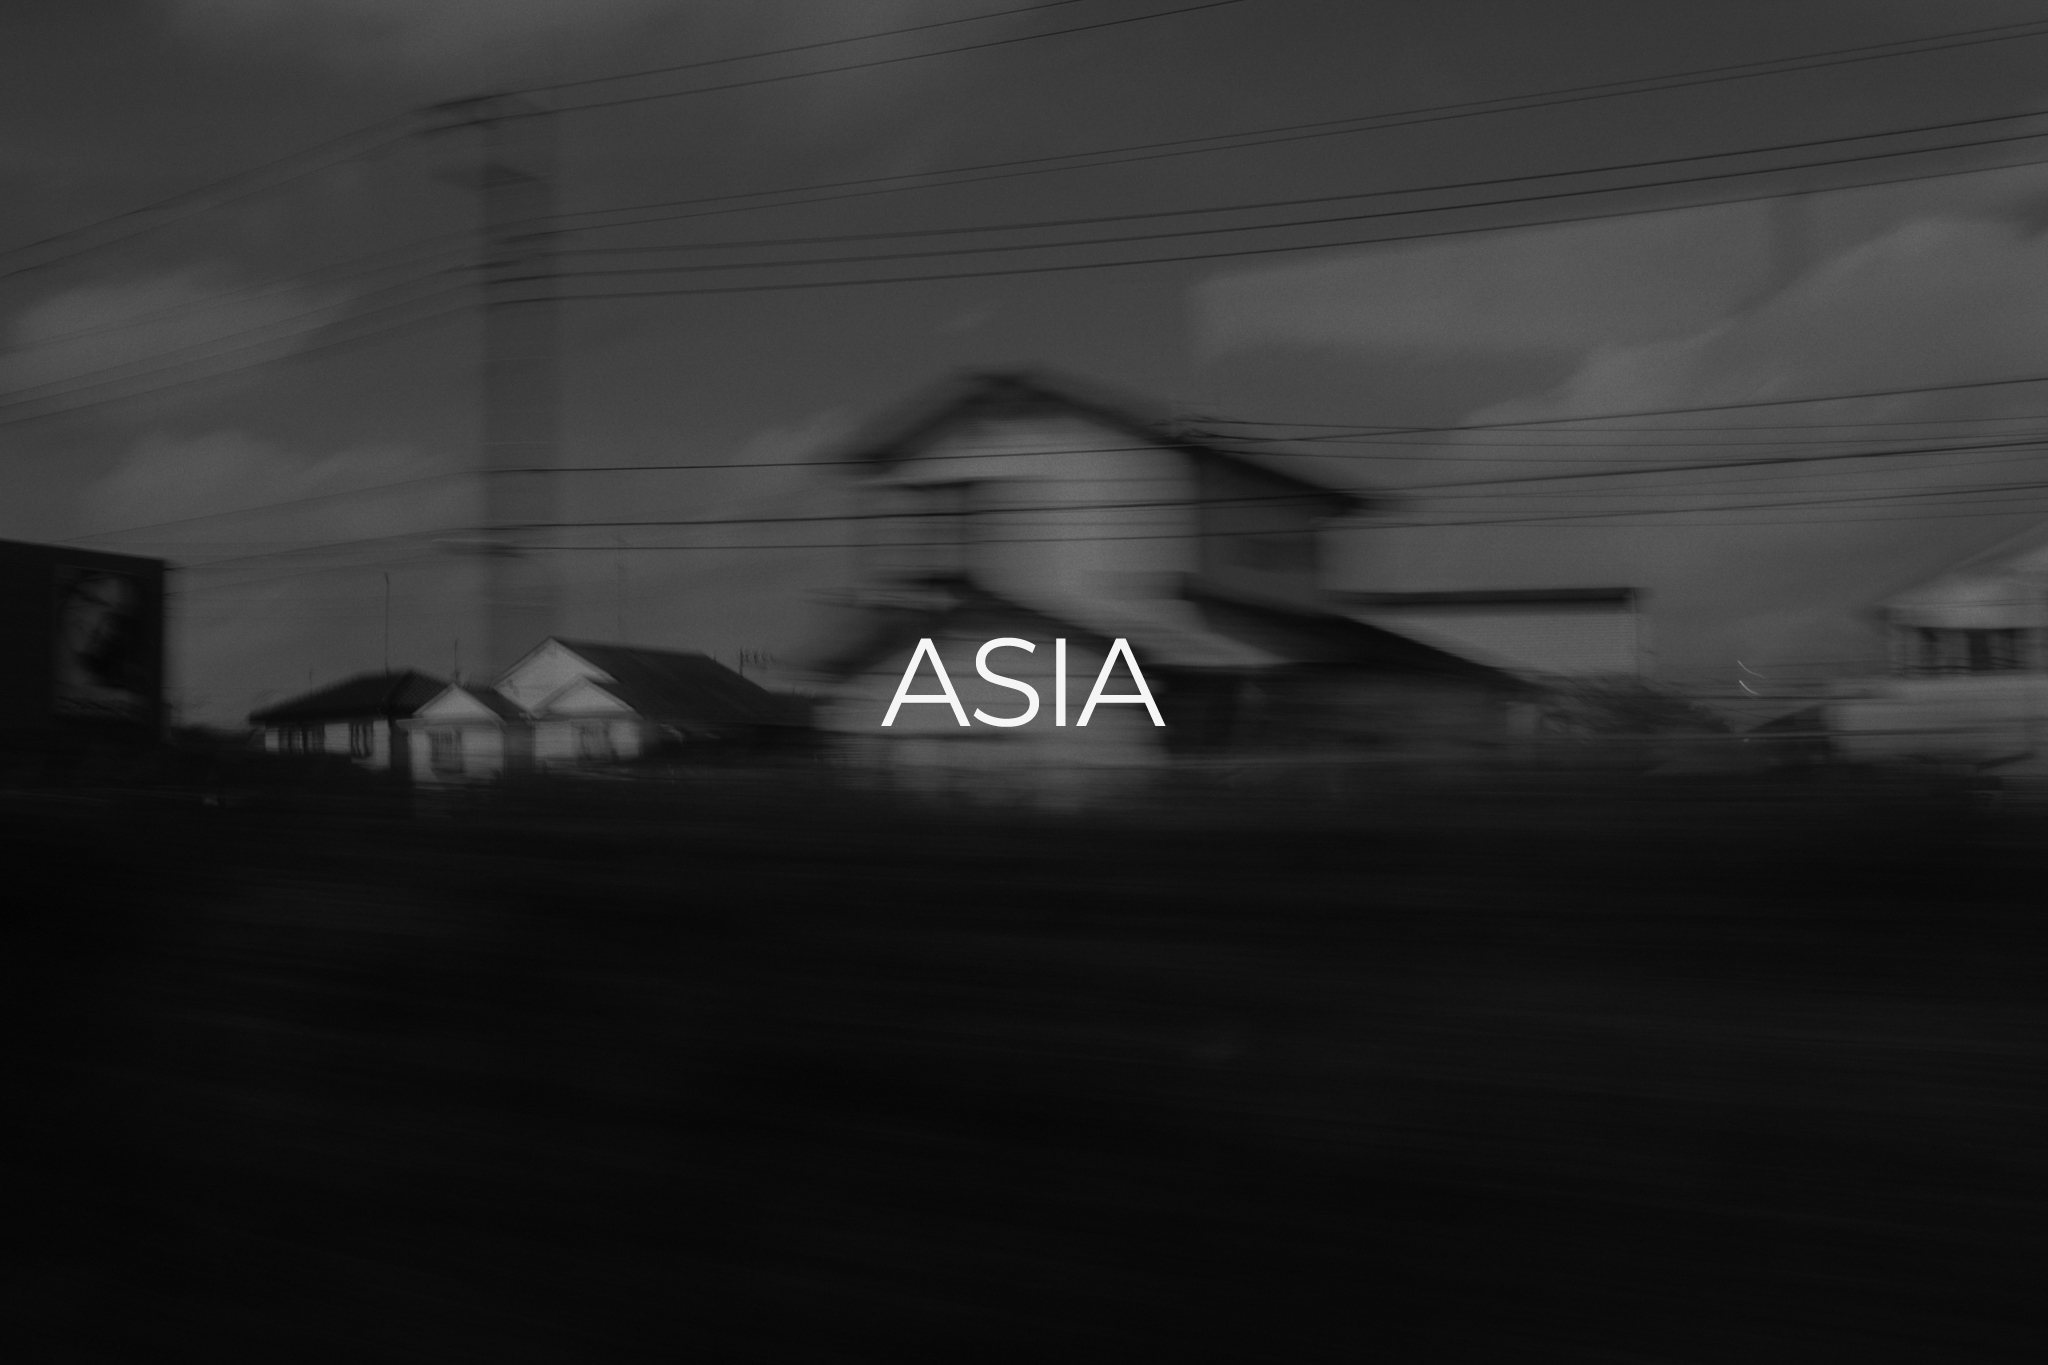 Asia_001bn